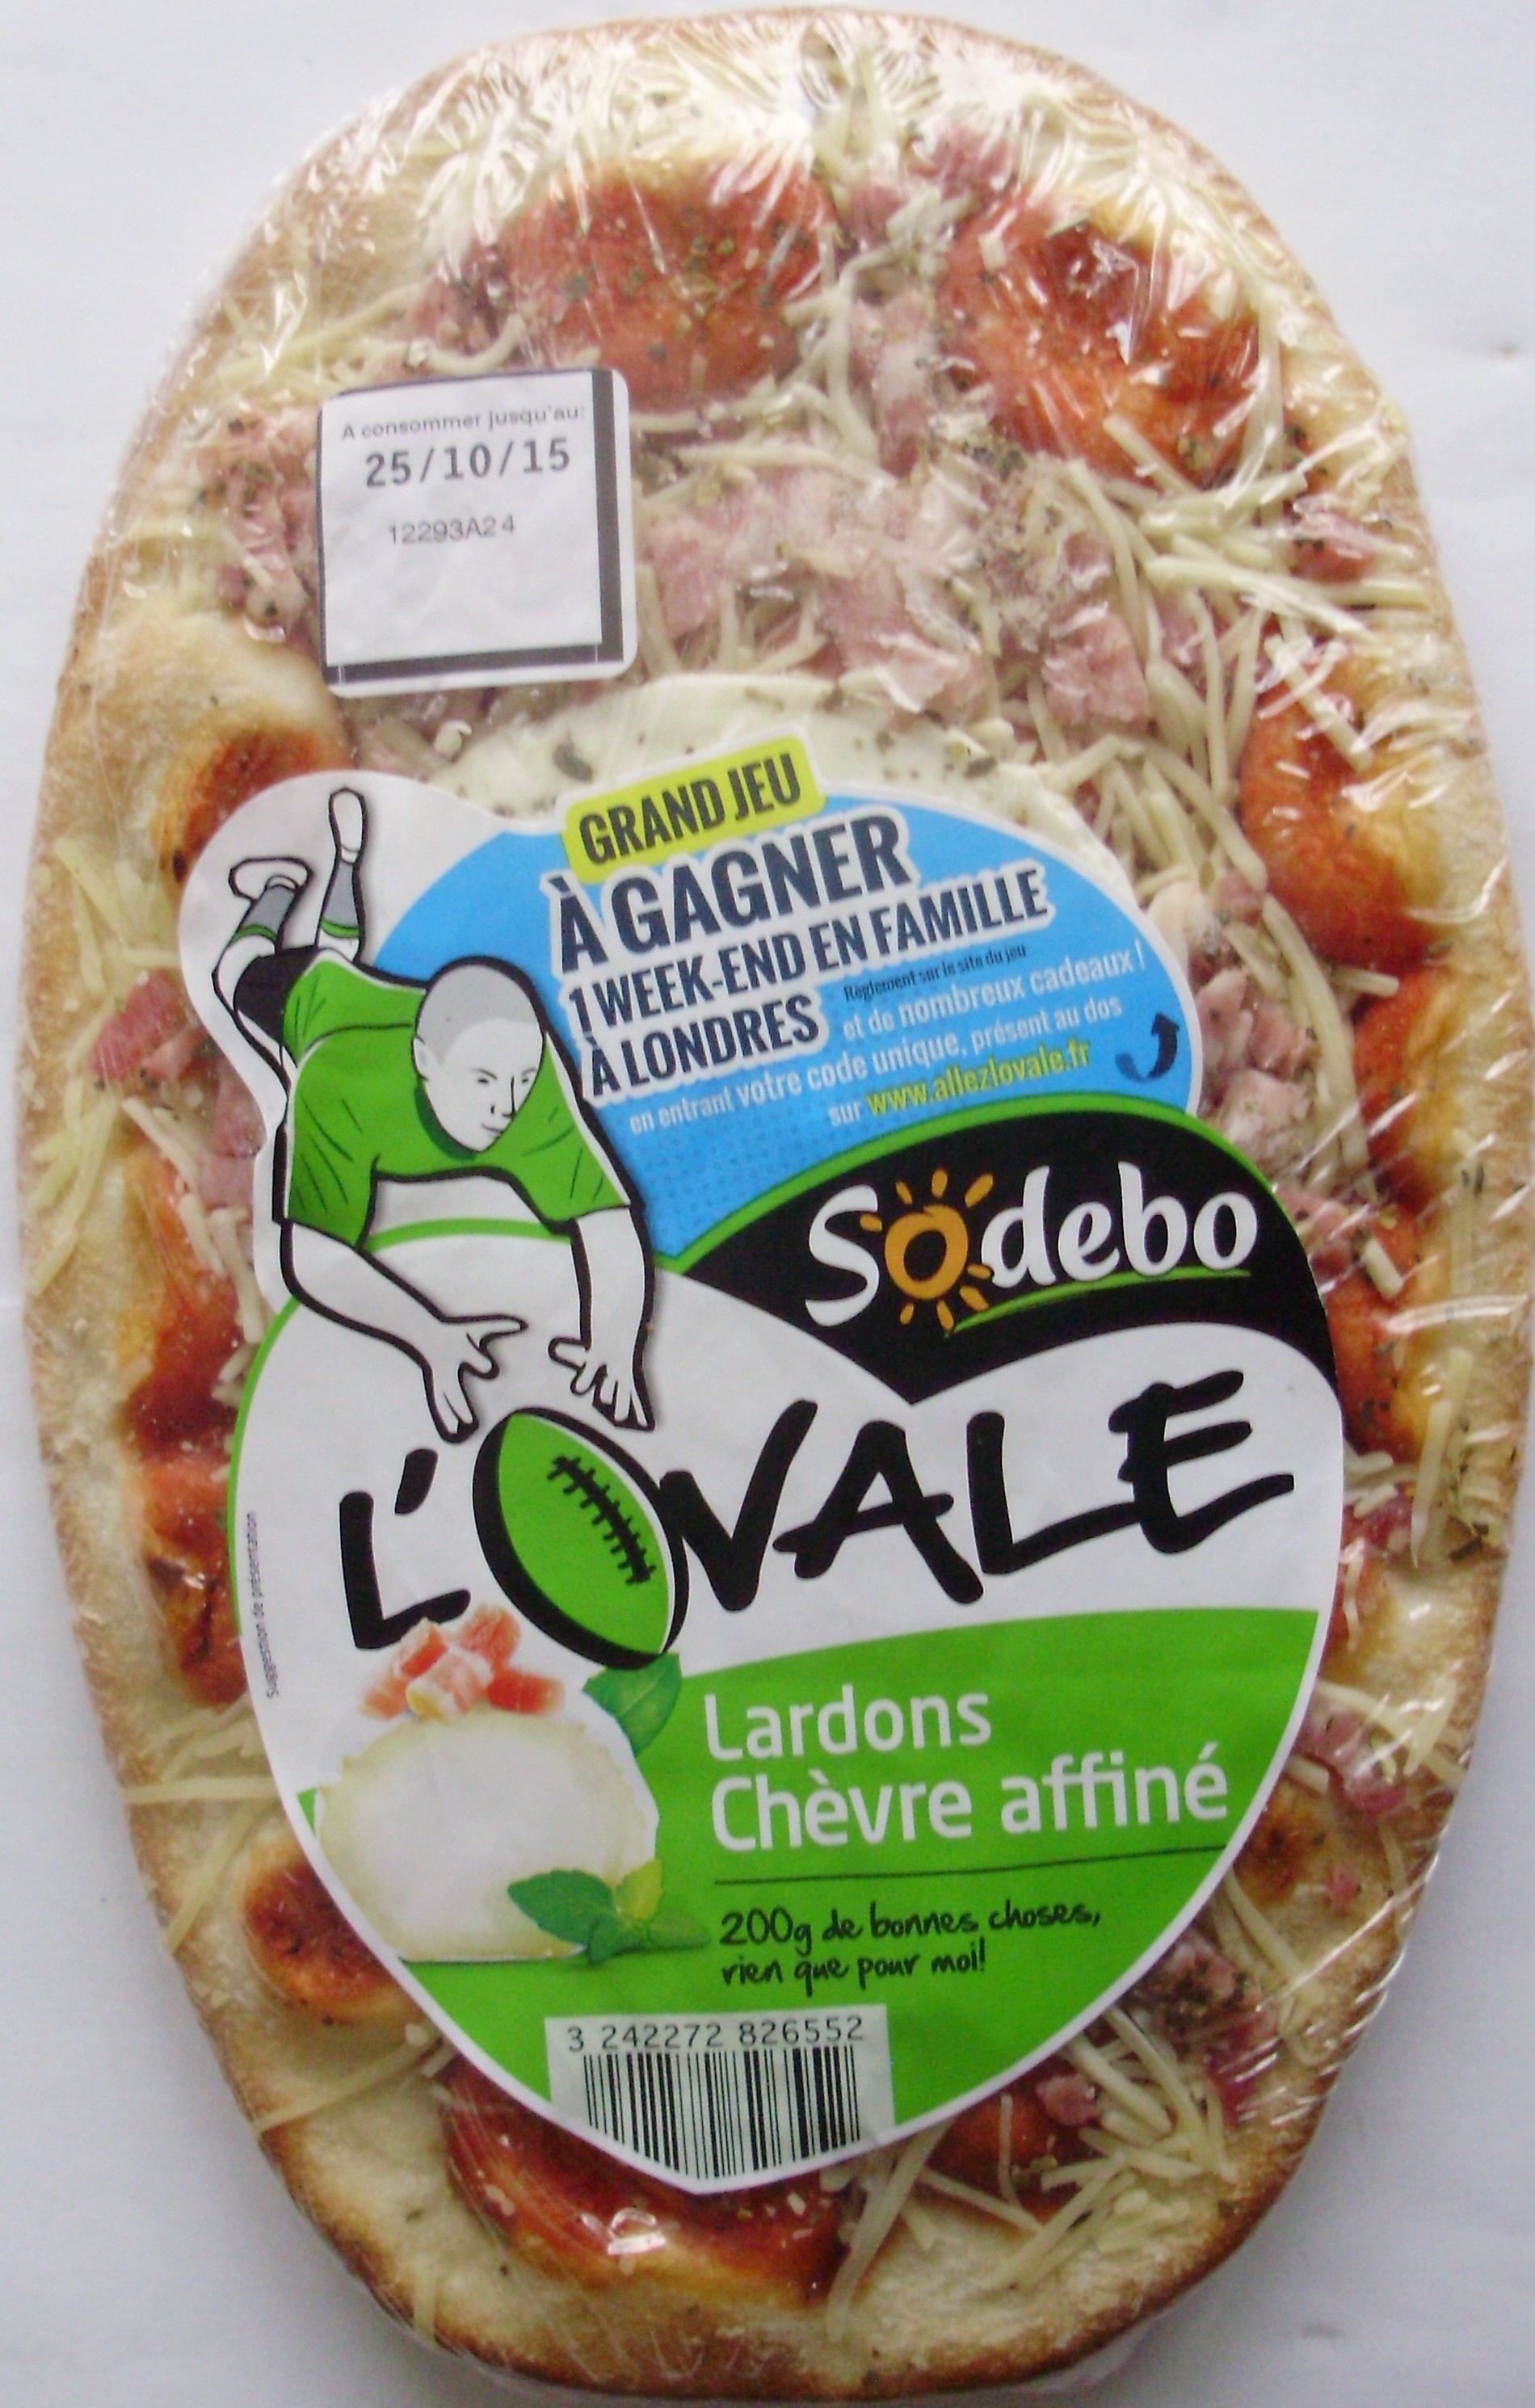 L'Ovale - Lardons Chèvre affiné - Producto - fr